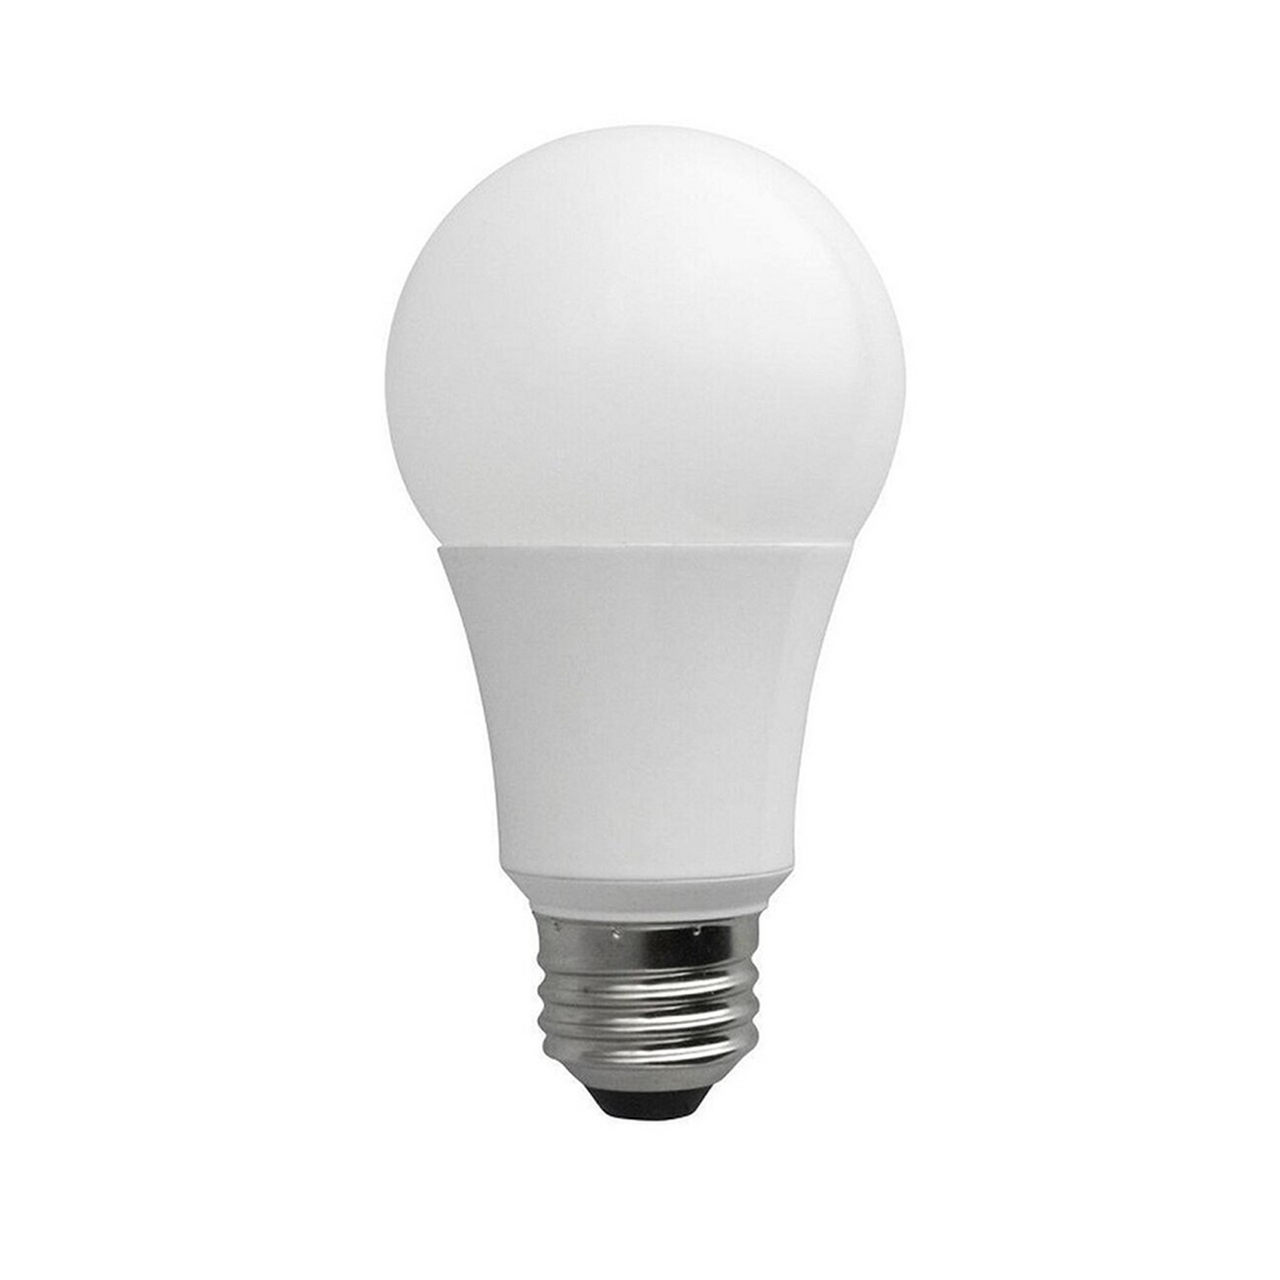 120-277 V LED A19 9W 4000K LED Light Bulb